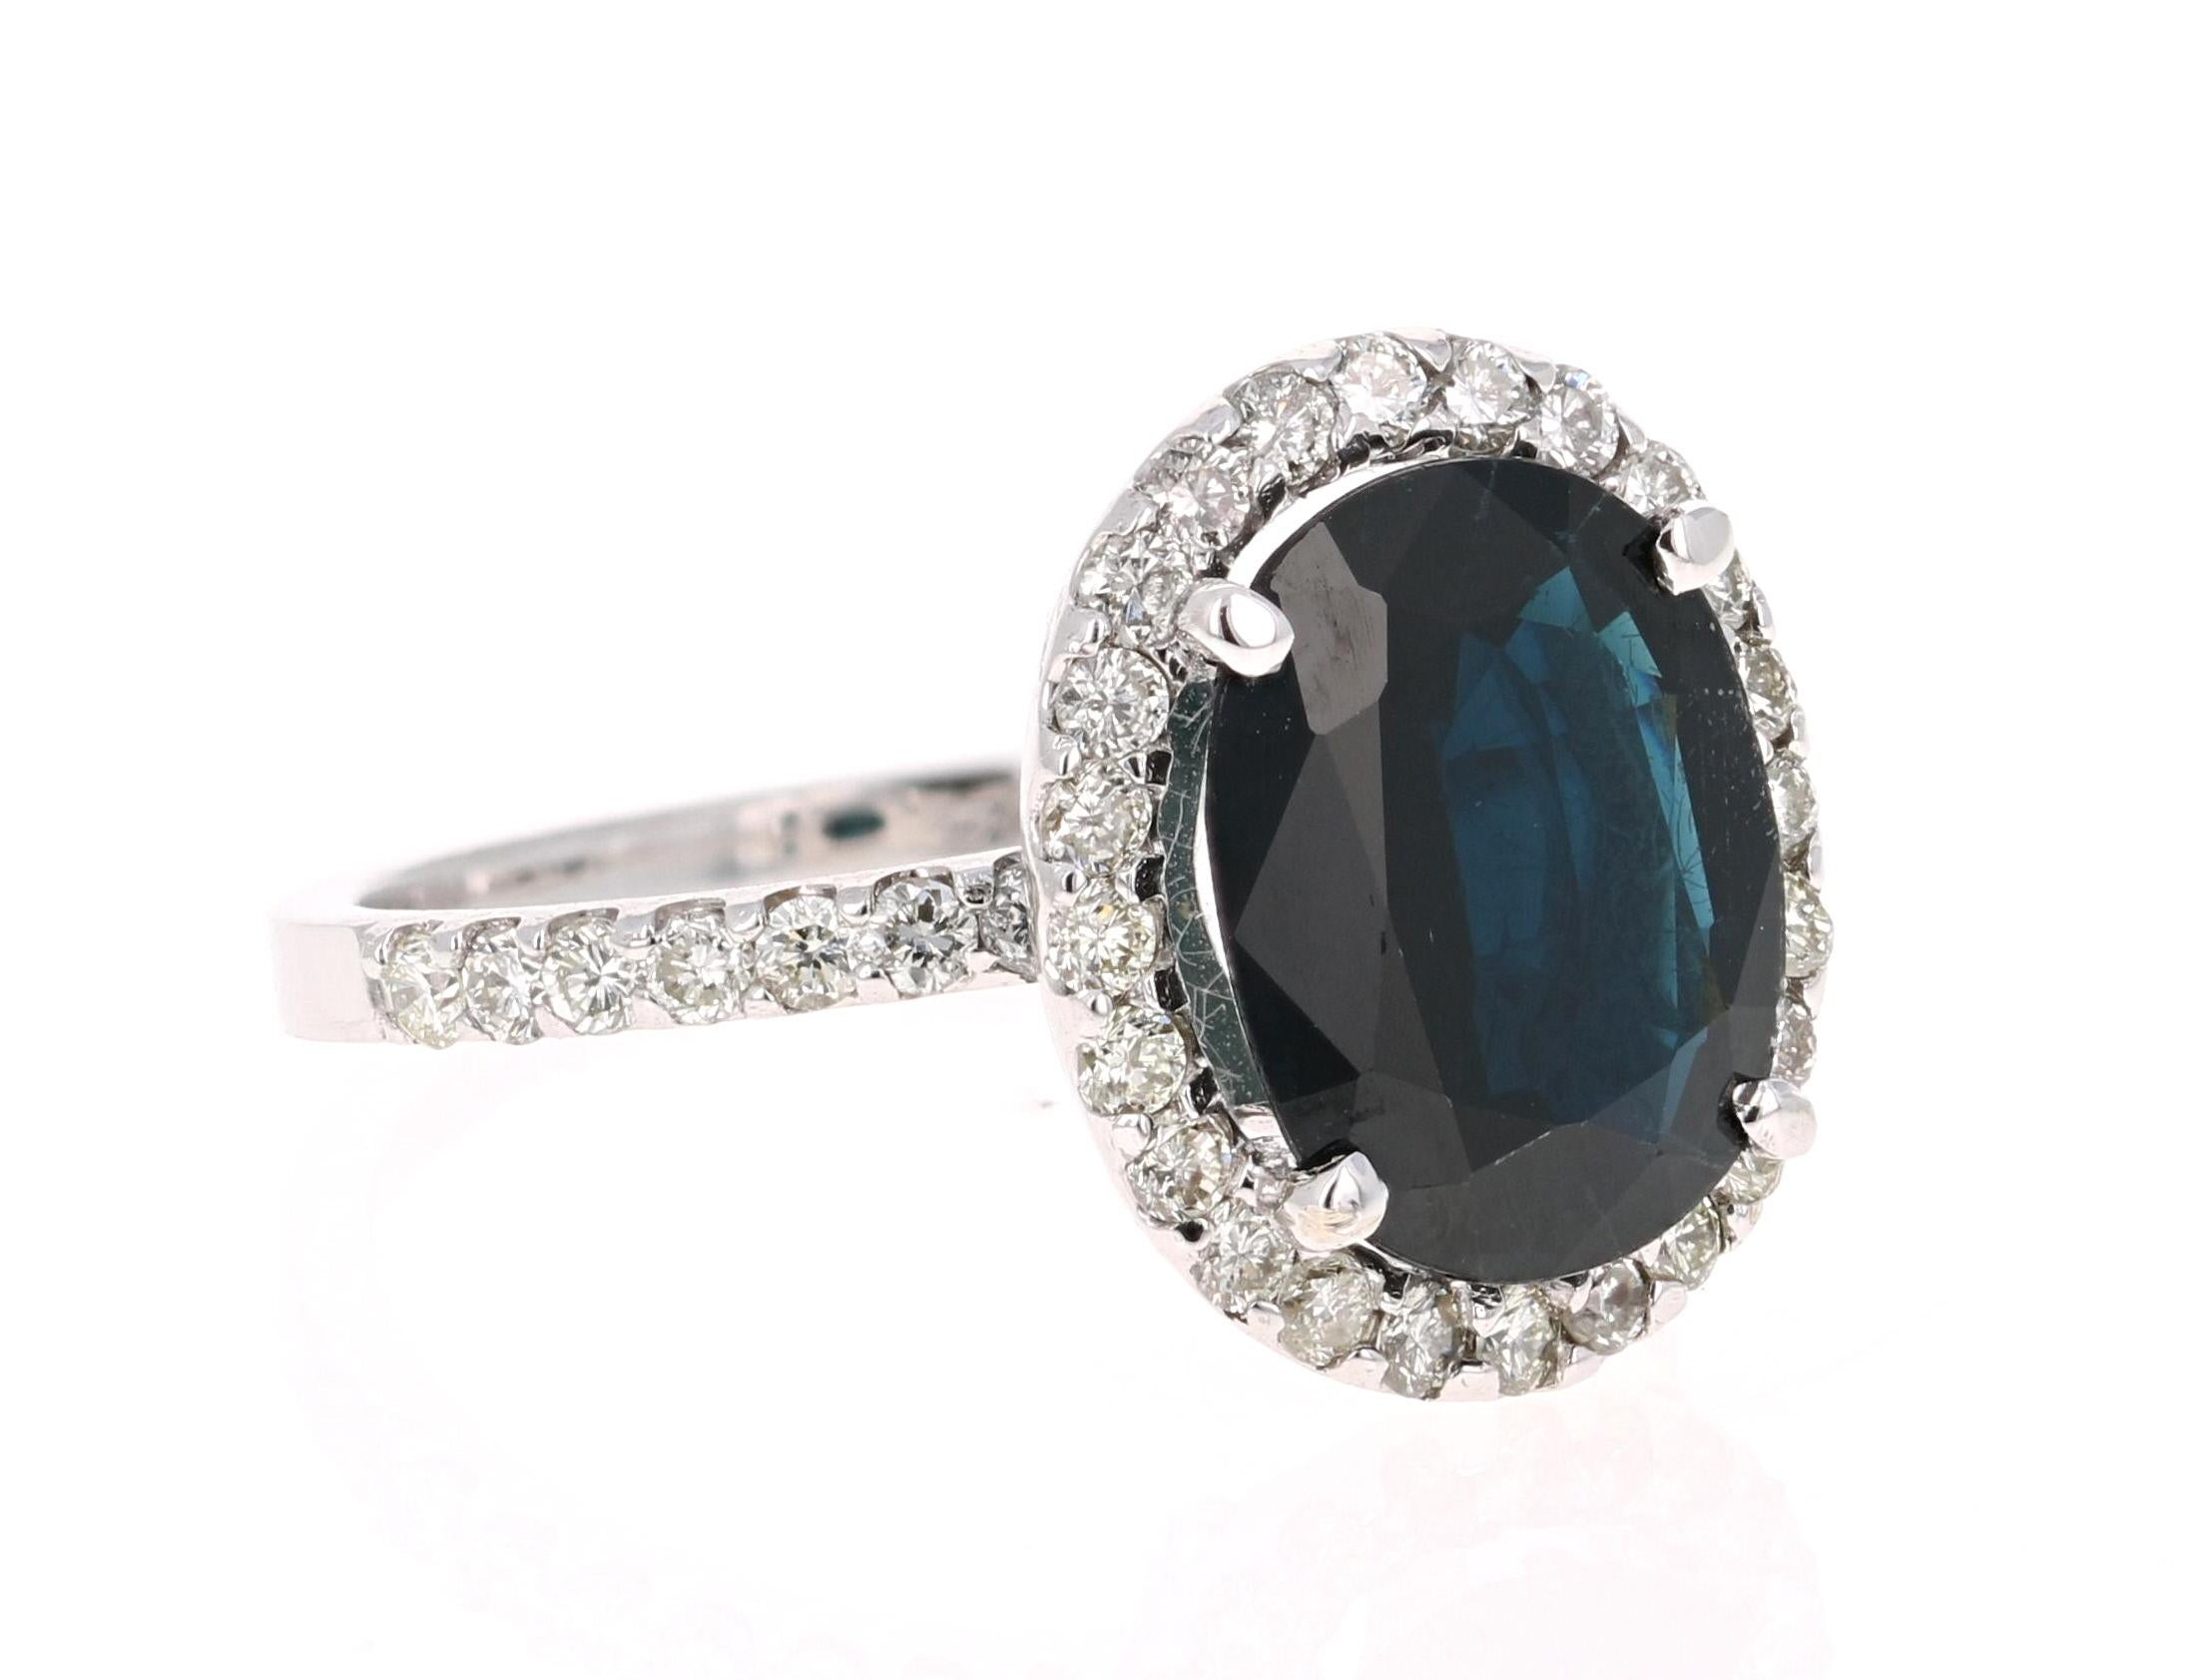 Atemberaubende Alternative zu einem normalen Diamant-Verlobungsring! 

Dieser dunkelblaue Saphirring hat einen blauen Saphir im Ovalschliff von 4,02 Karat und ist von einem Halo aus 38 Diamanten im Rundschliff umgeben, die 0,71 Karat wiegen. Das